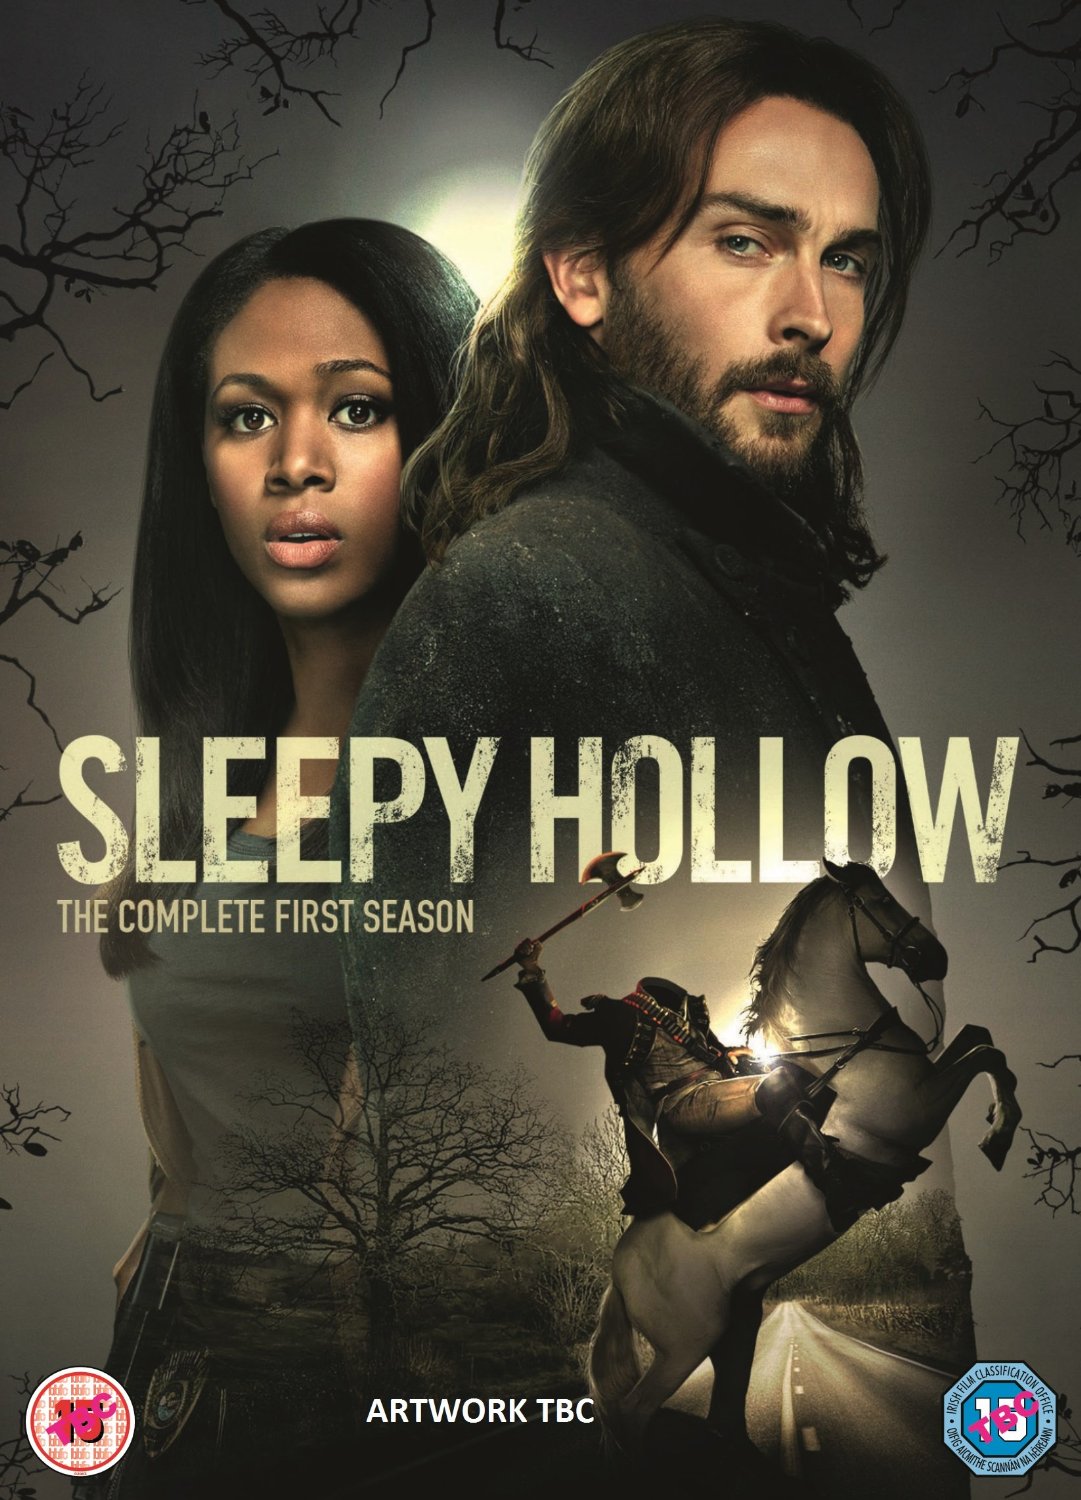 TV on DVD: Sleepy Hollow Season One